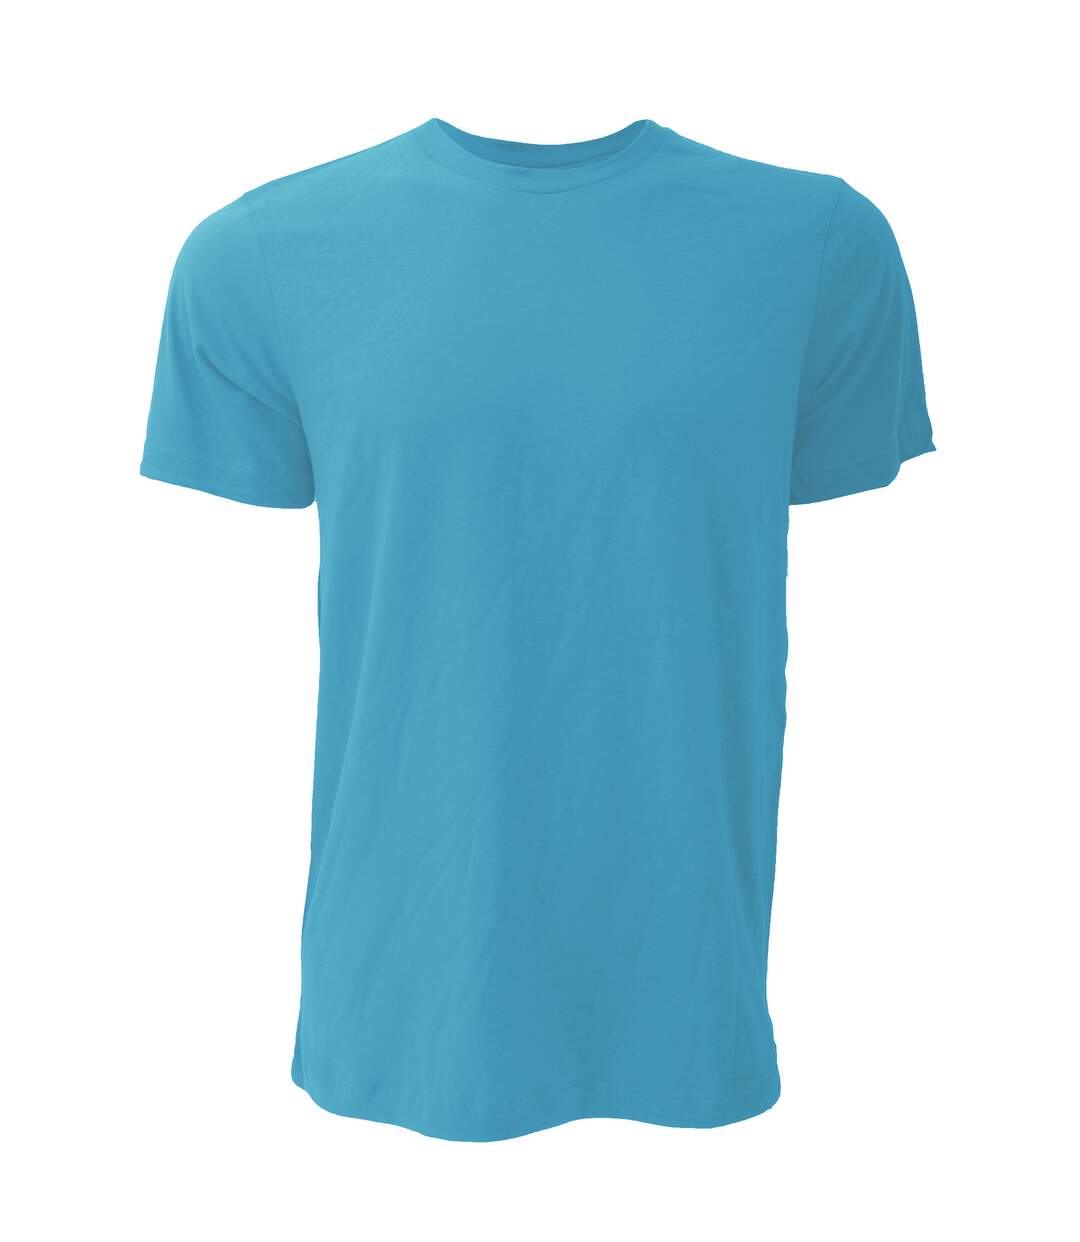 Canvas - T-shirt JERSEY - Hommes (Eau chinée) - UTBC163